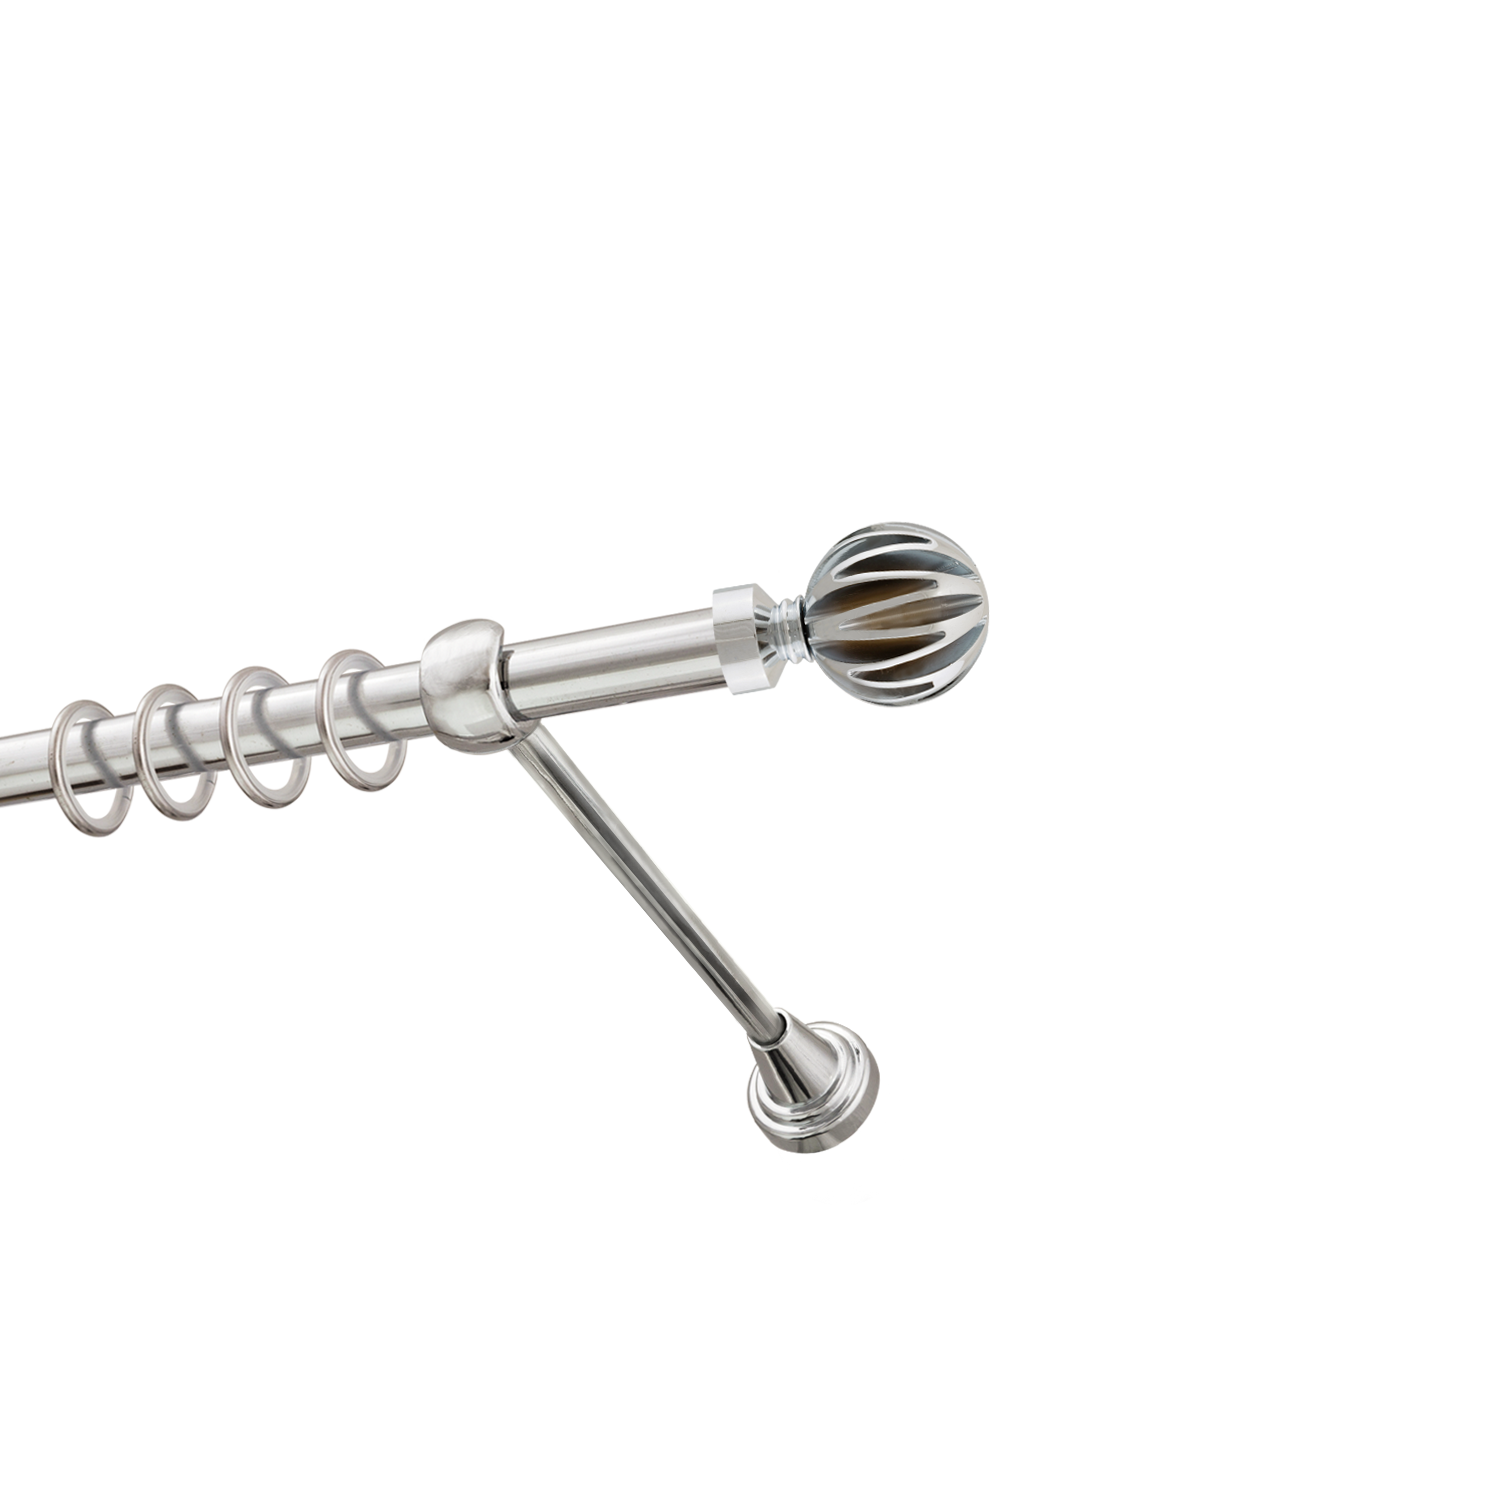 Металлический карниз для штор Шафран, однорядный 16 мм, серебро, гладкая штанга, длина 240 см